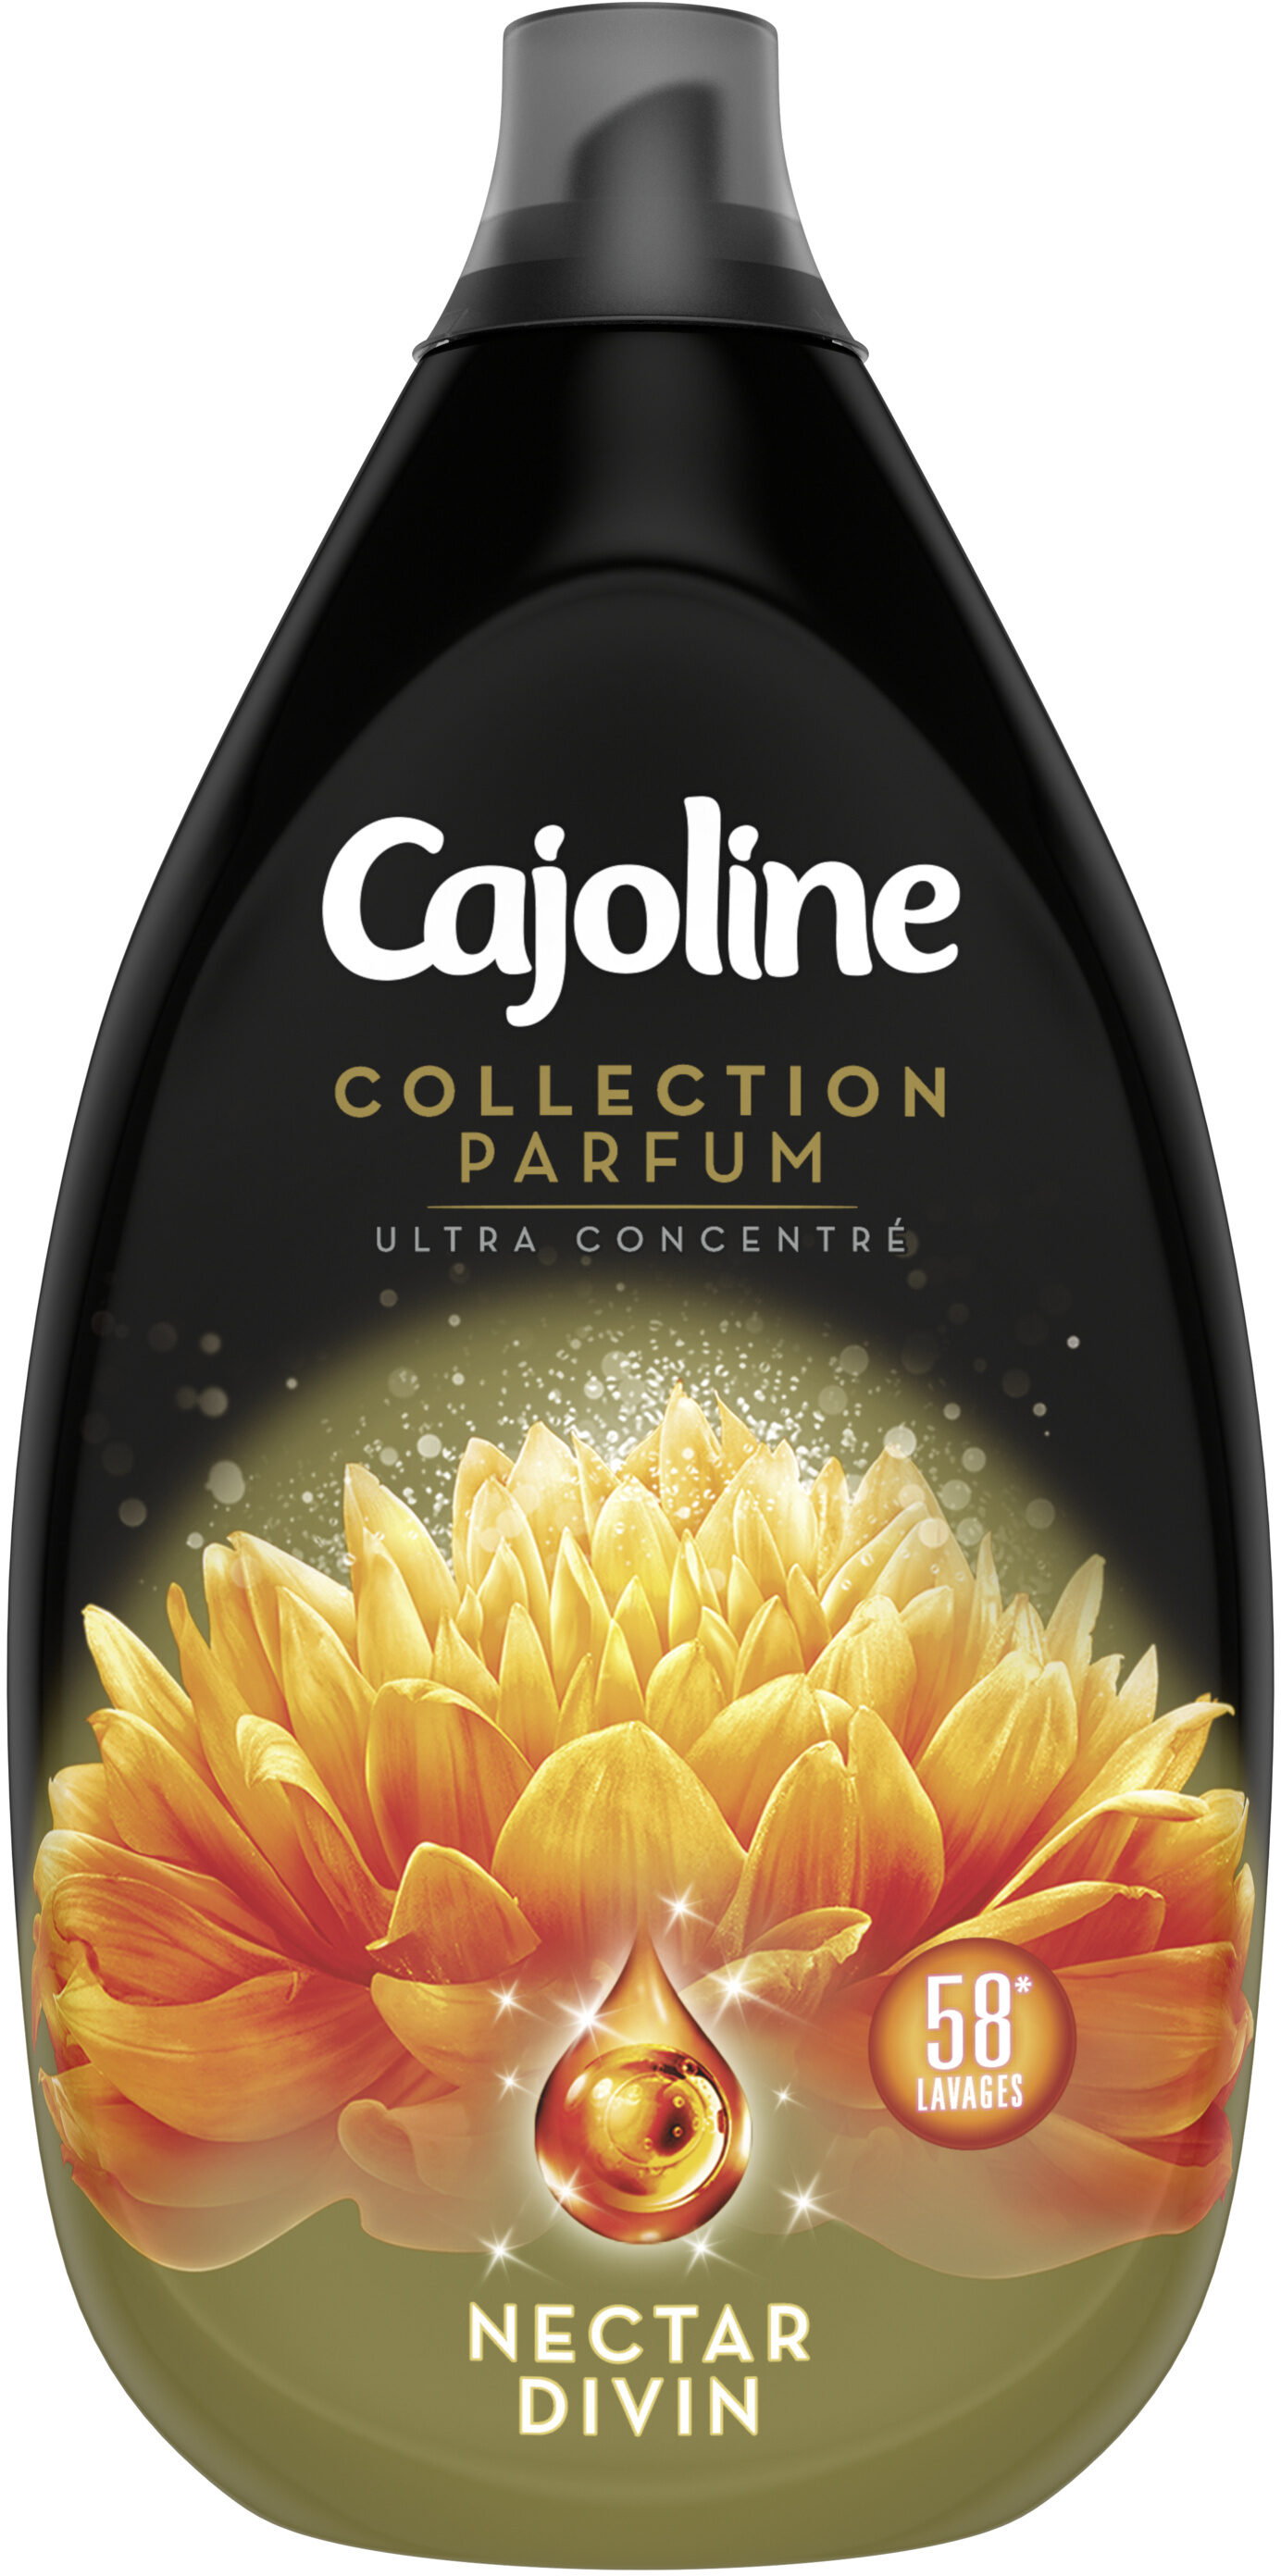 Cajoline Collection Parfum Assouplissant Ultra Concentré Nectar Divin 870ml - 58 Lavages - Product - fr